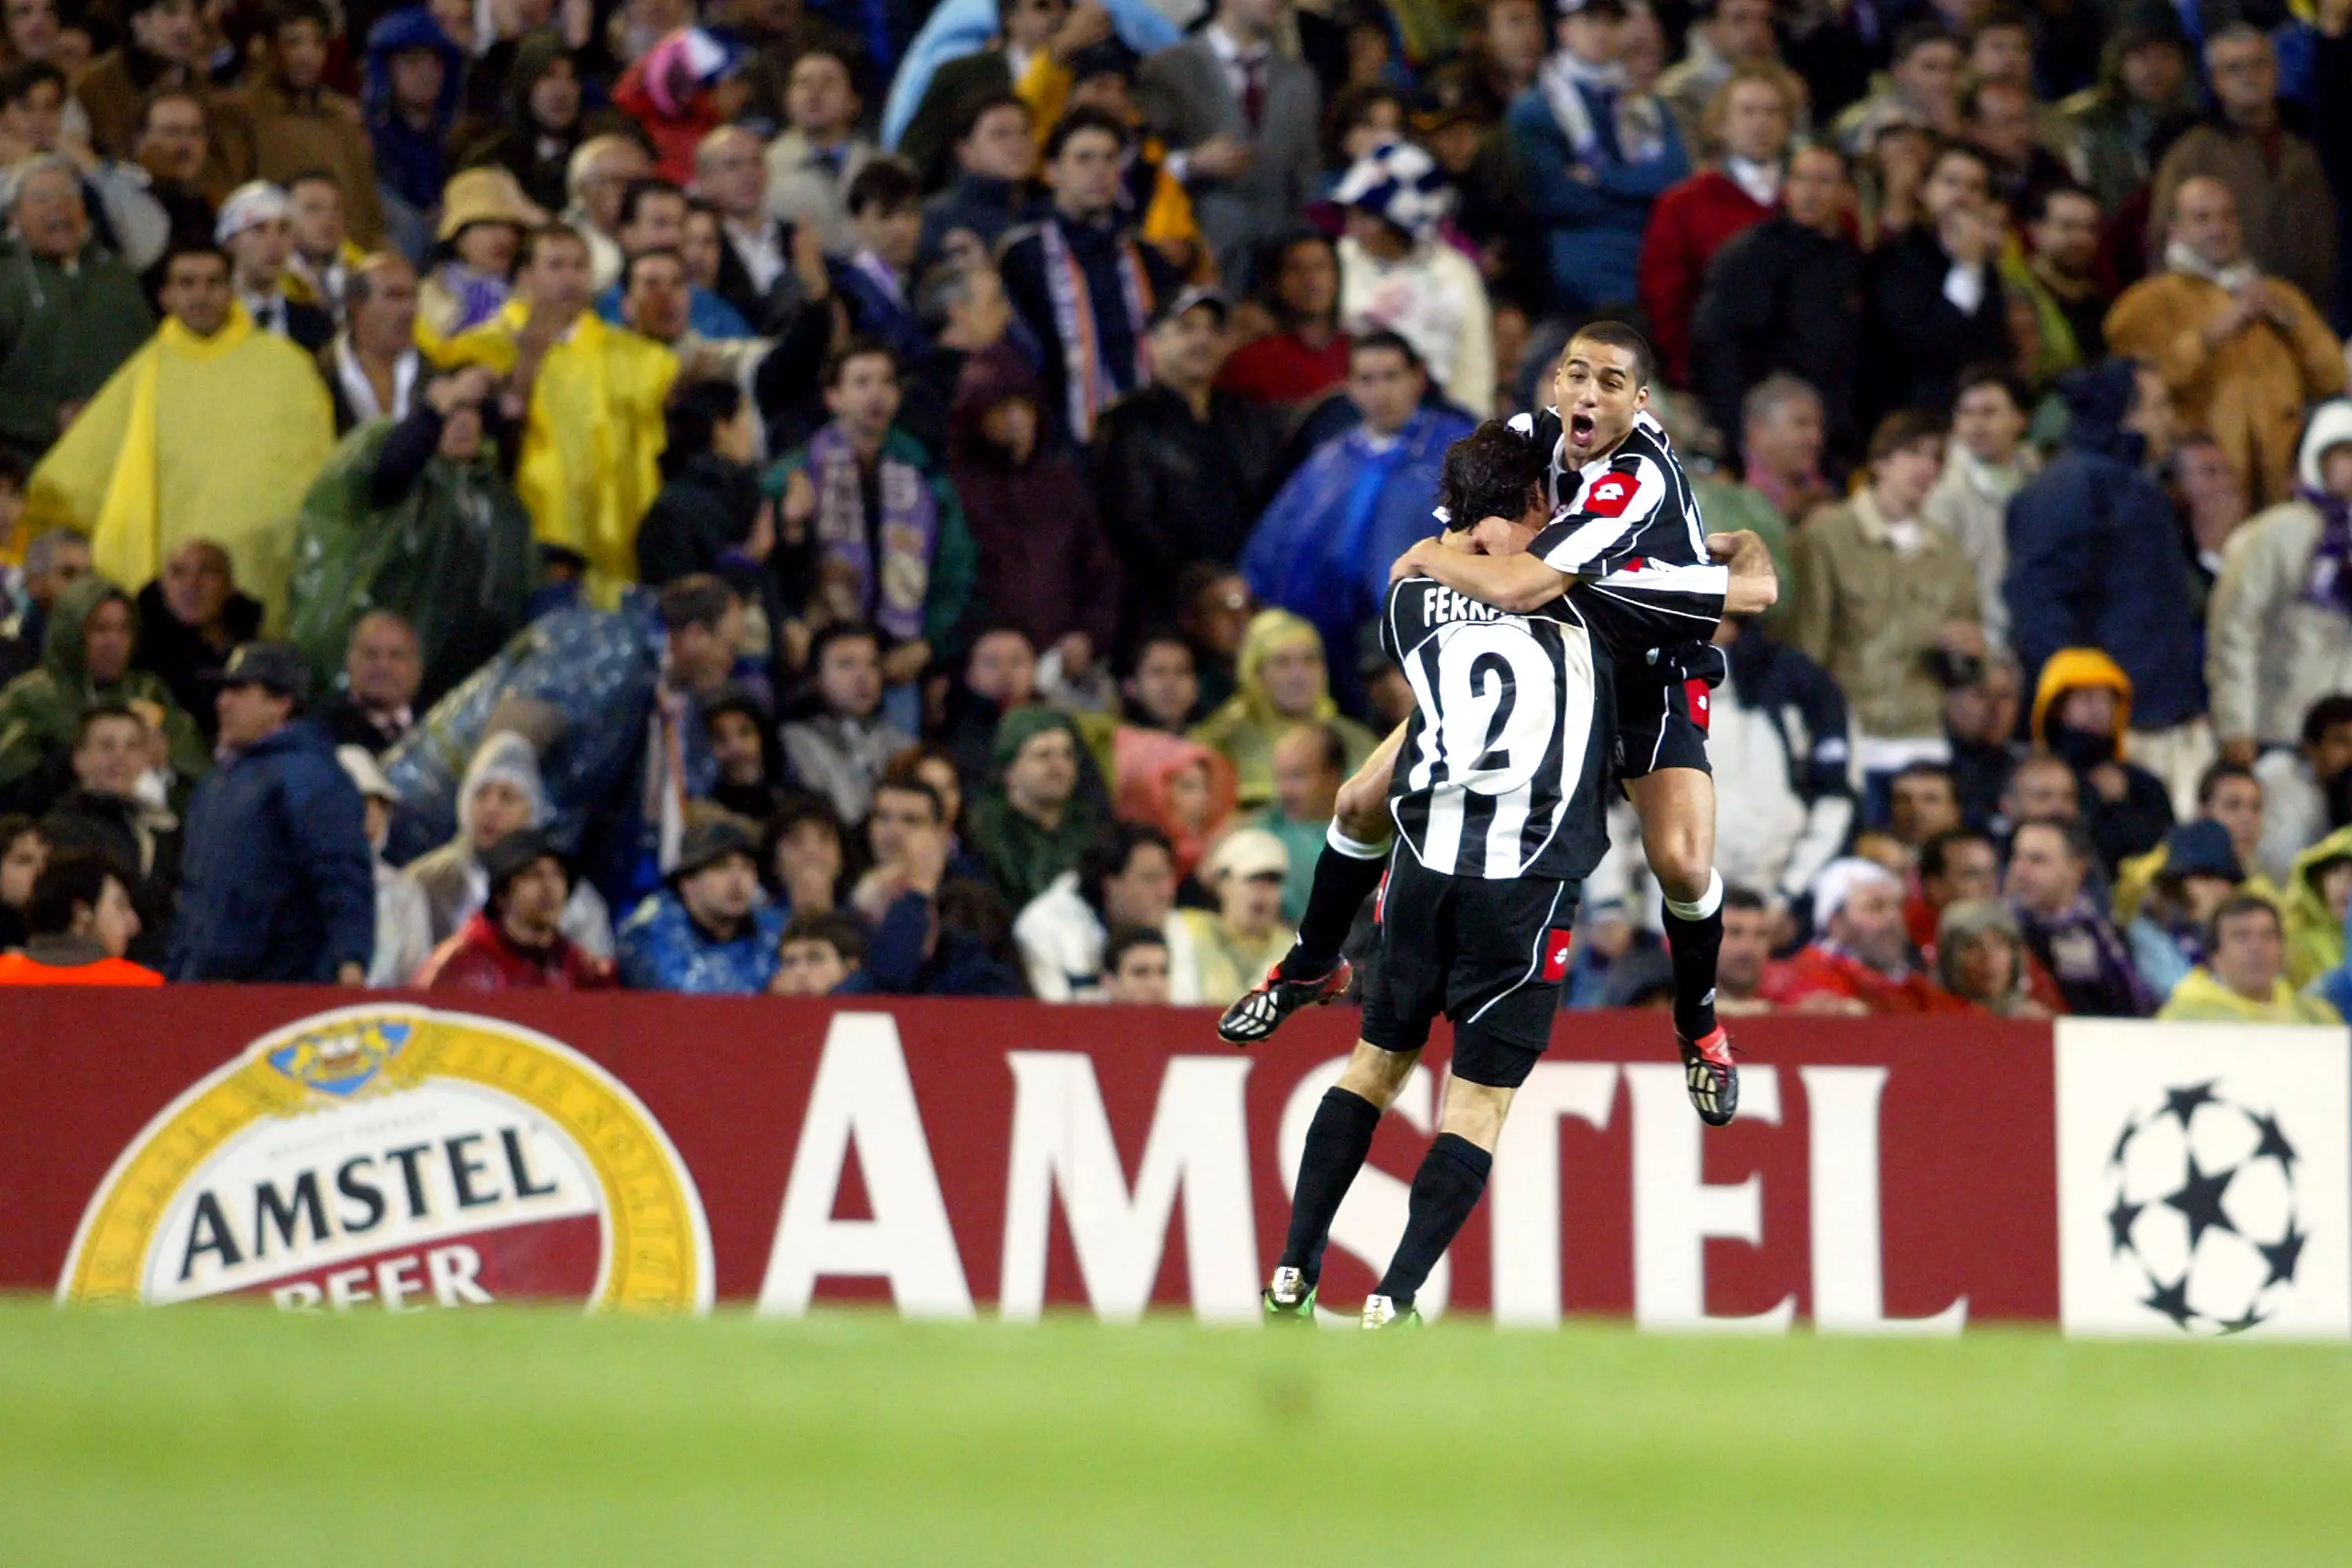 Trezeguet celebrates scoring for Juventus. Image: PA